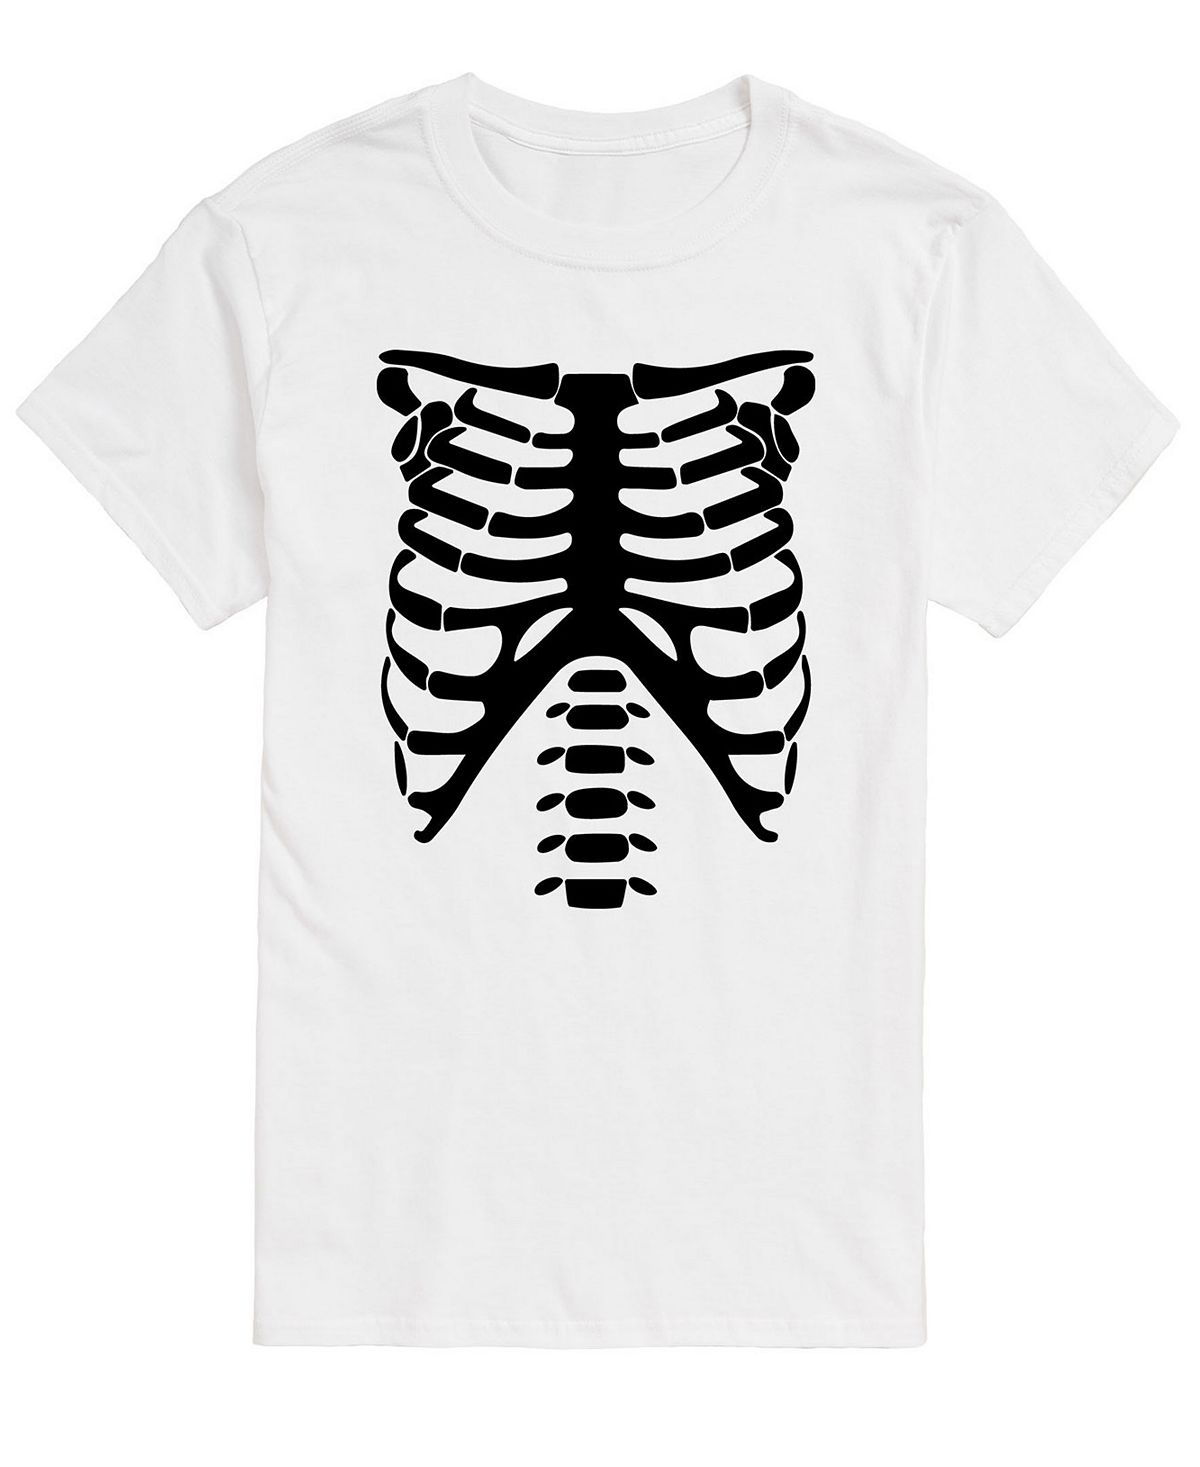 цена Мужская футболка классического кроя skeleton chest AIRWAVES, белый